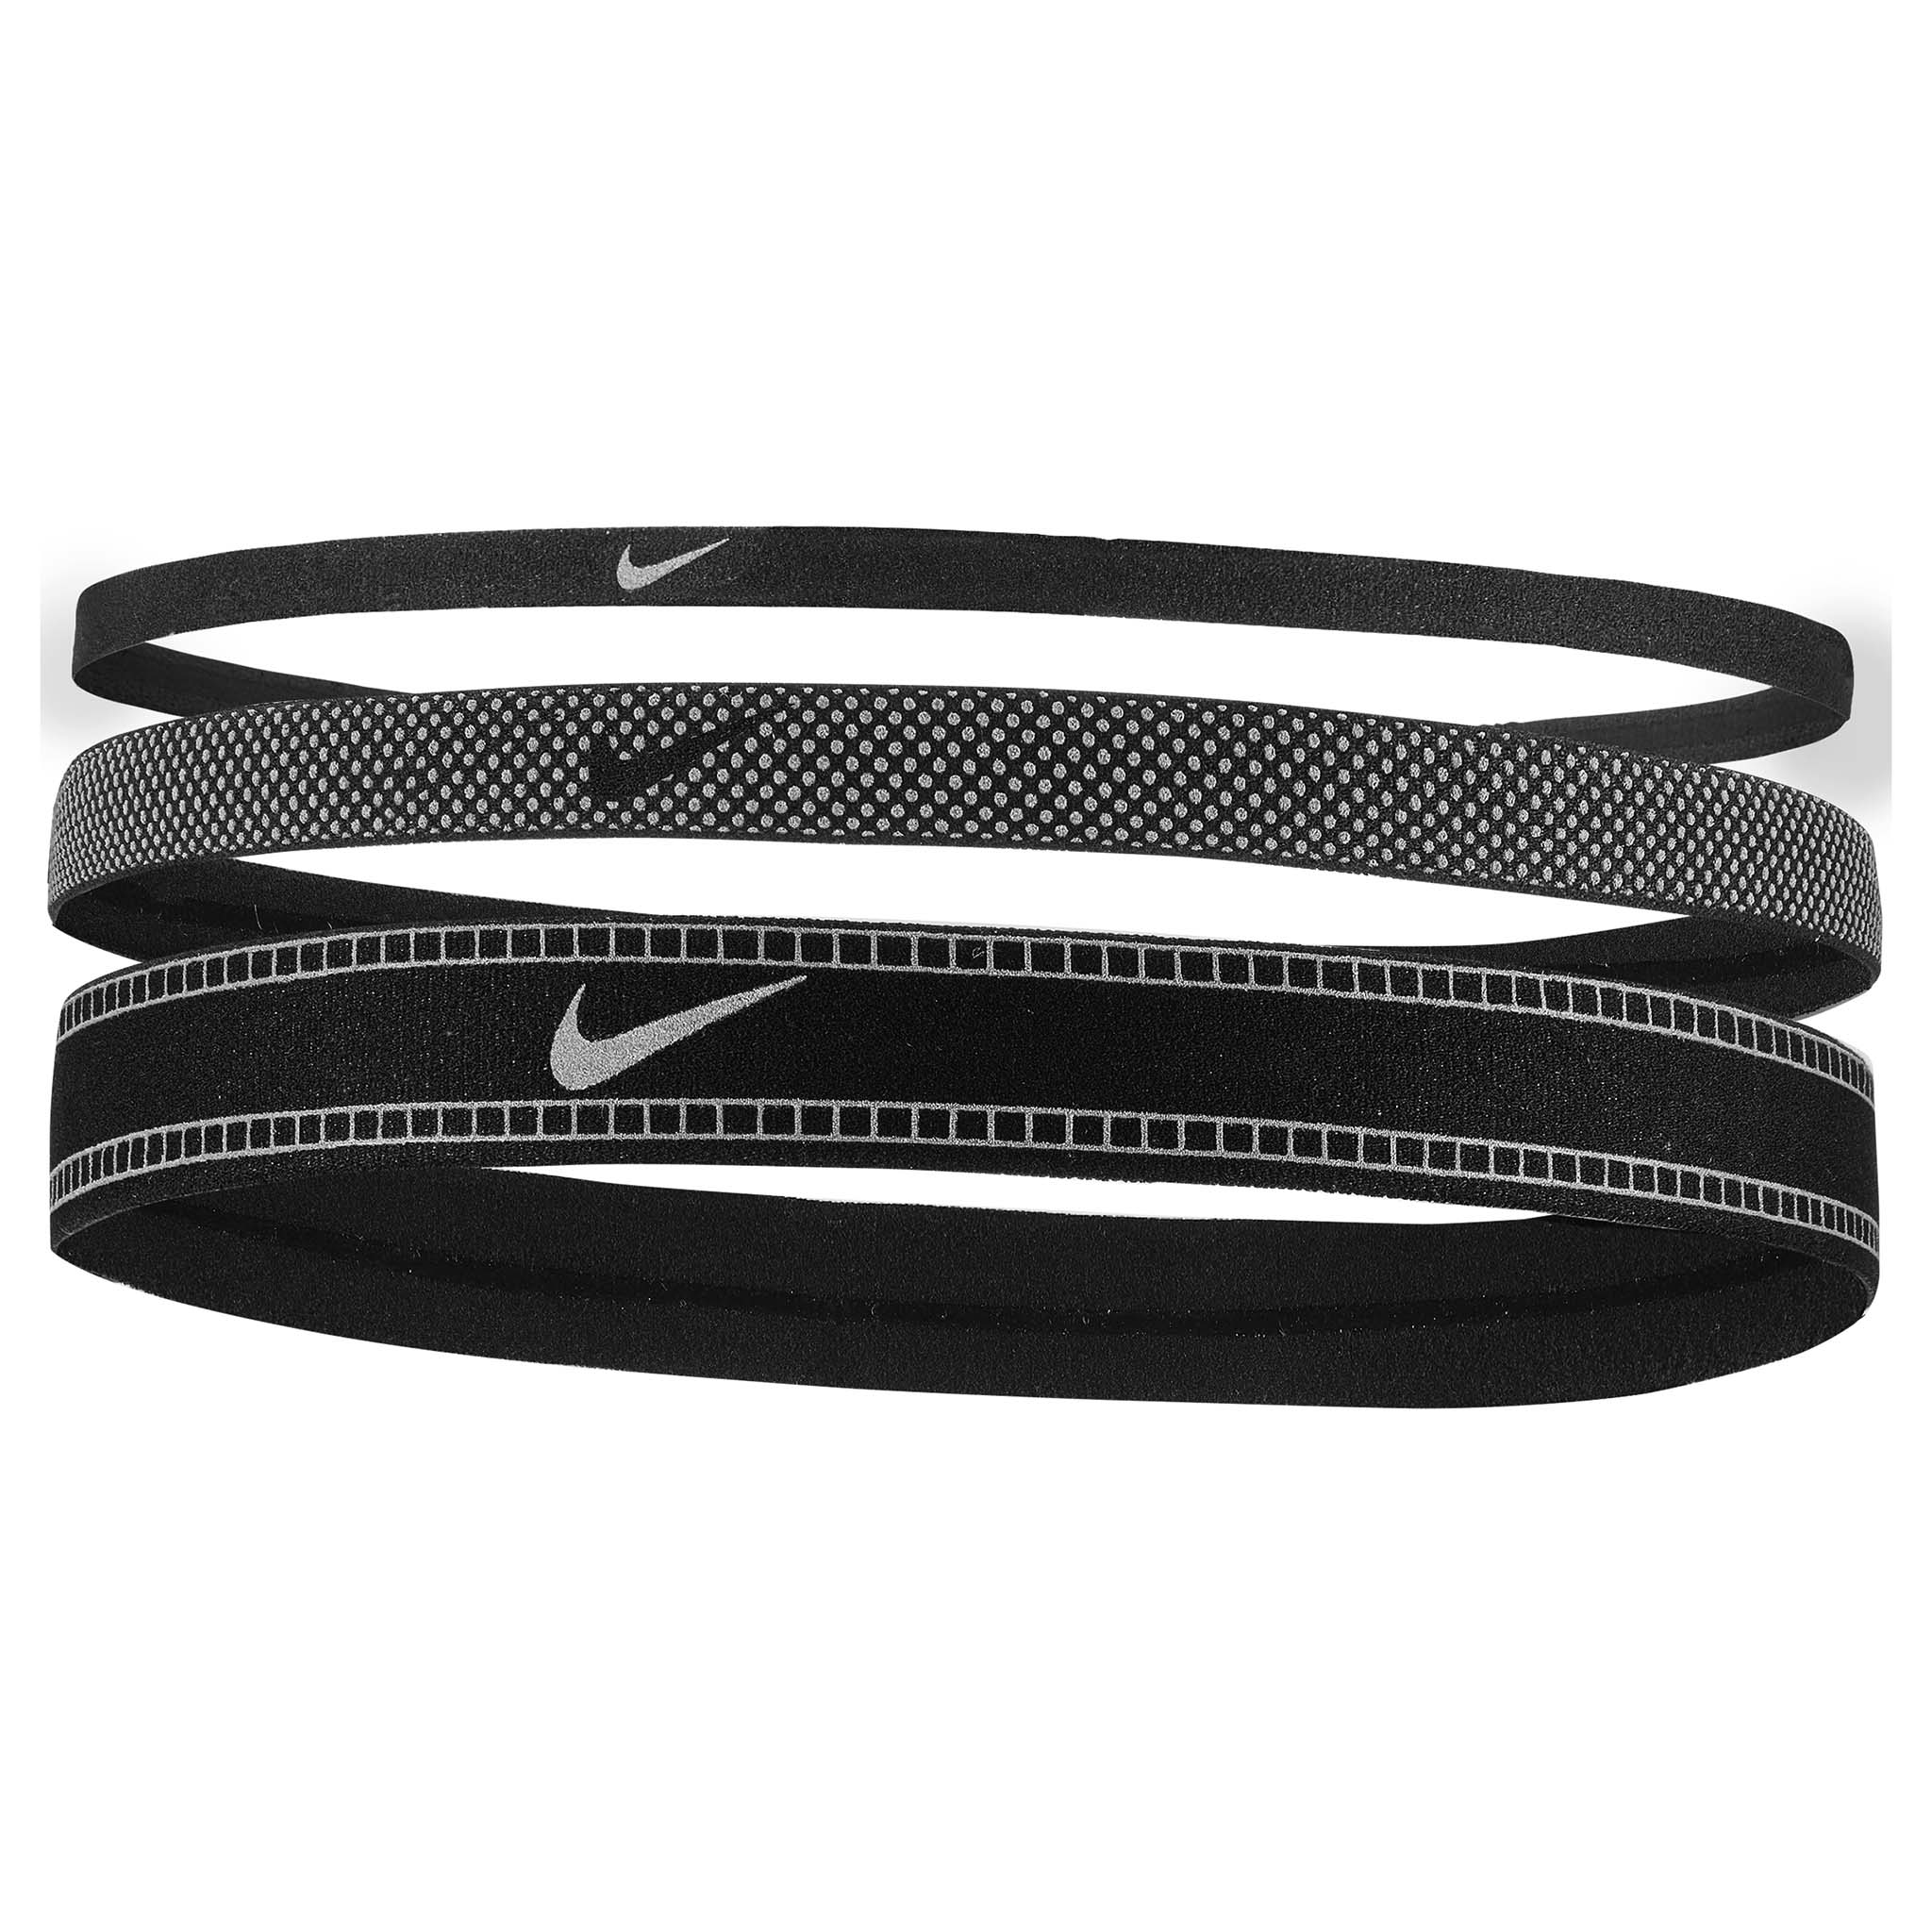 Nike Reflective Headbands 3pk bandeaux pour cheveux largeur variées -  Soccer Sport Fitness